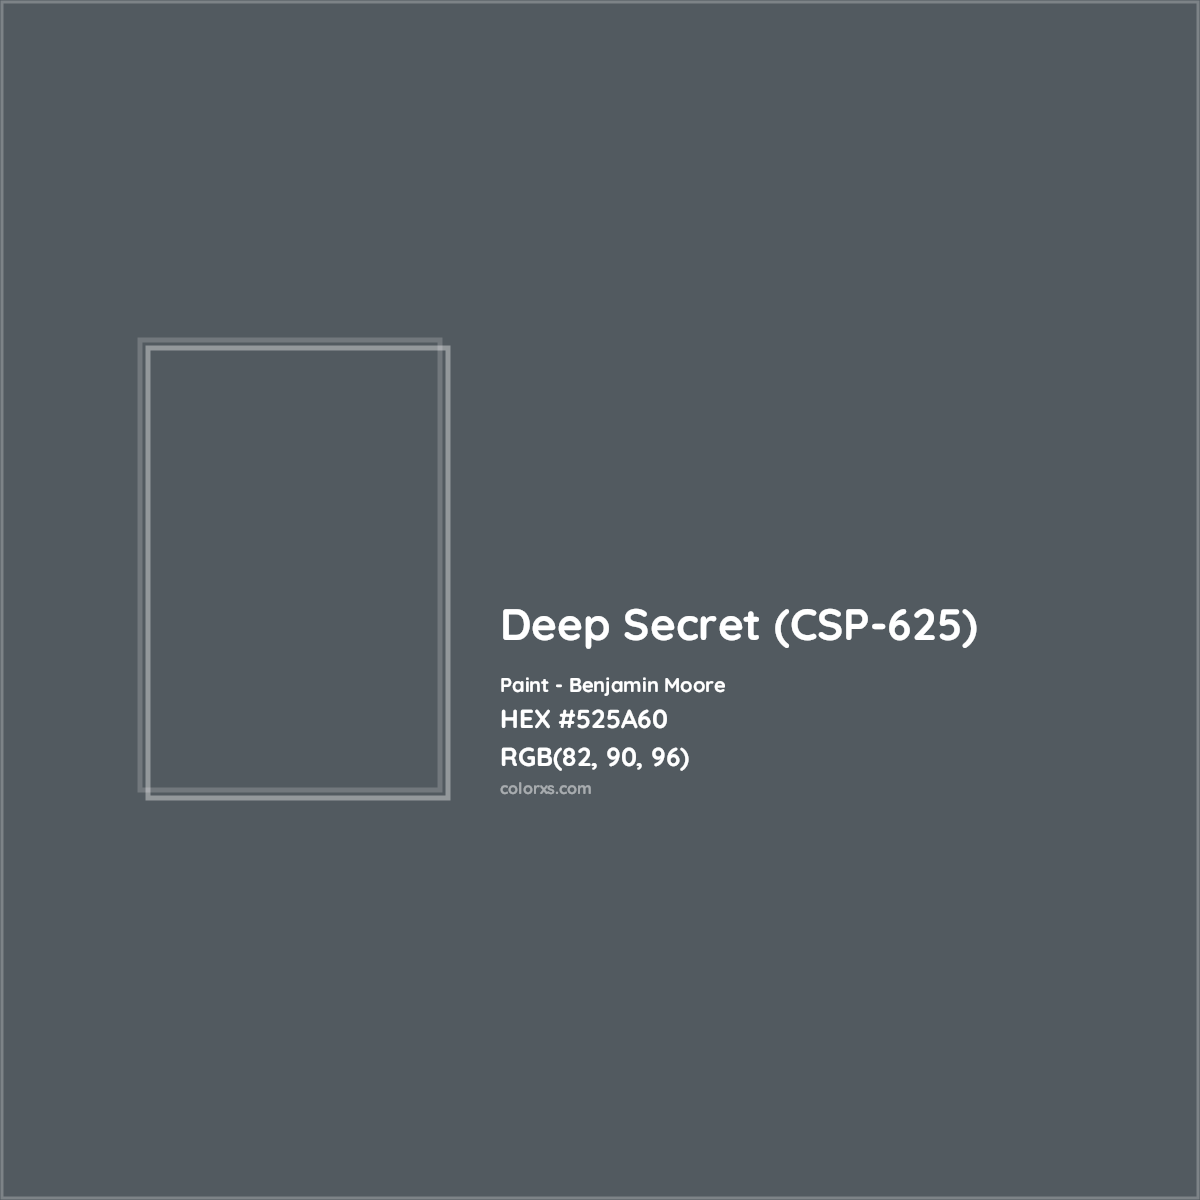 HEX #525A60 Deep Secret (CSP-625) Paint Benjamin Moore - Color Code